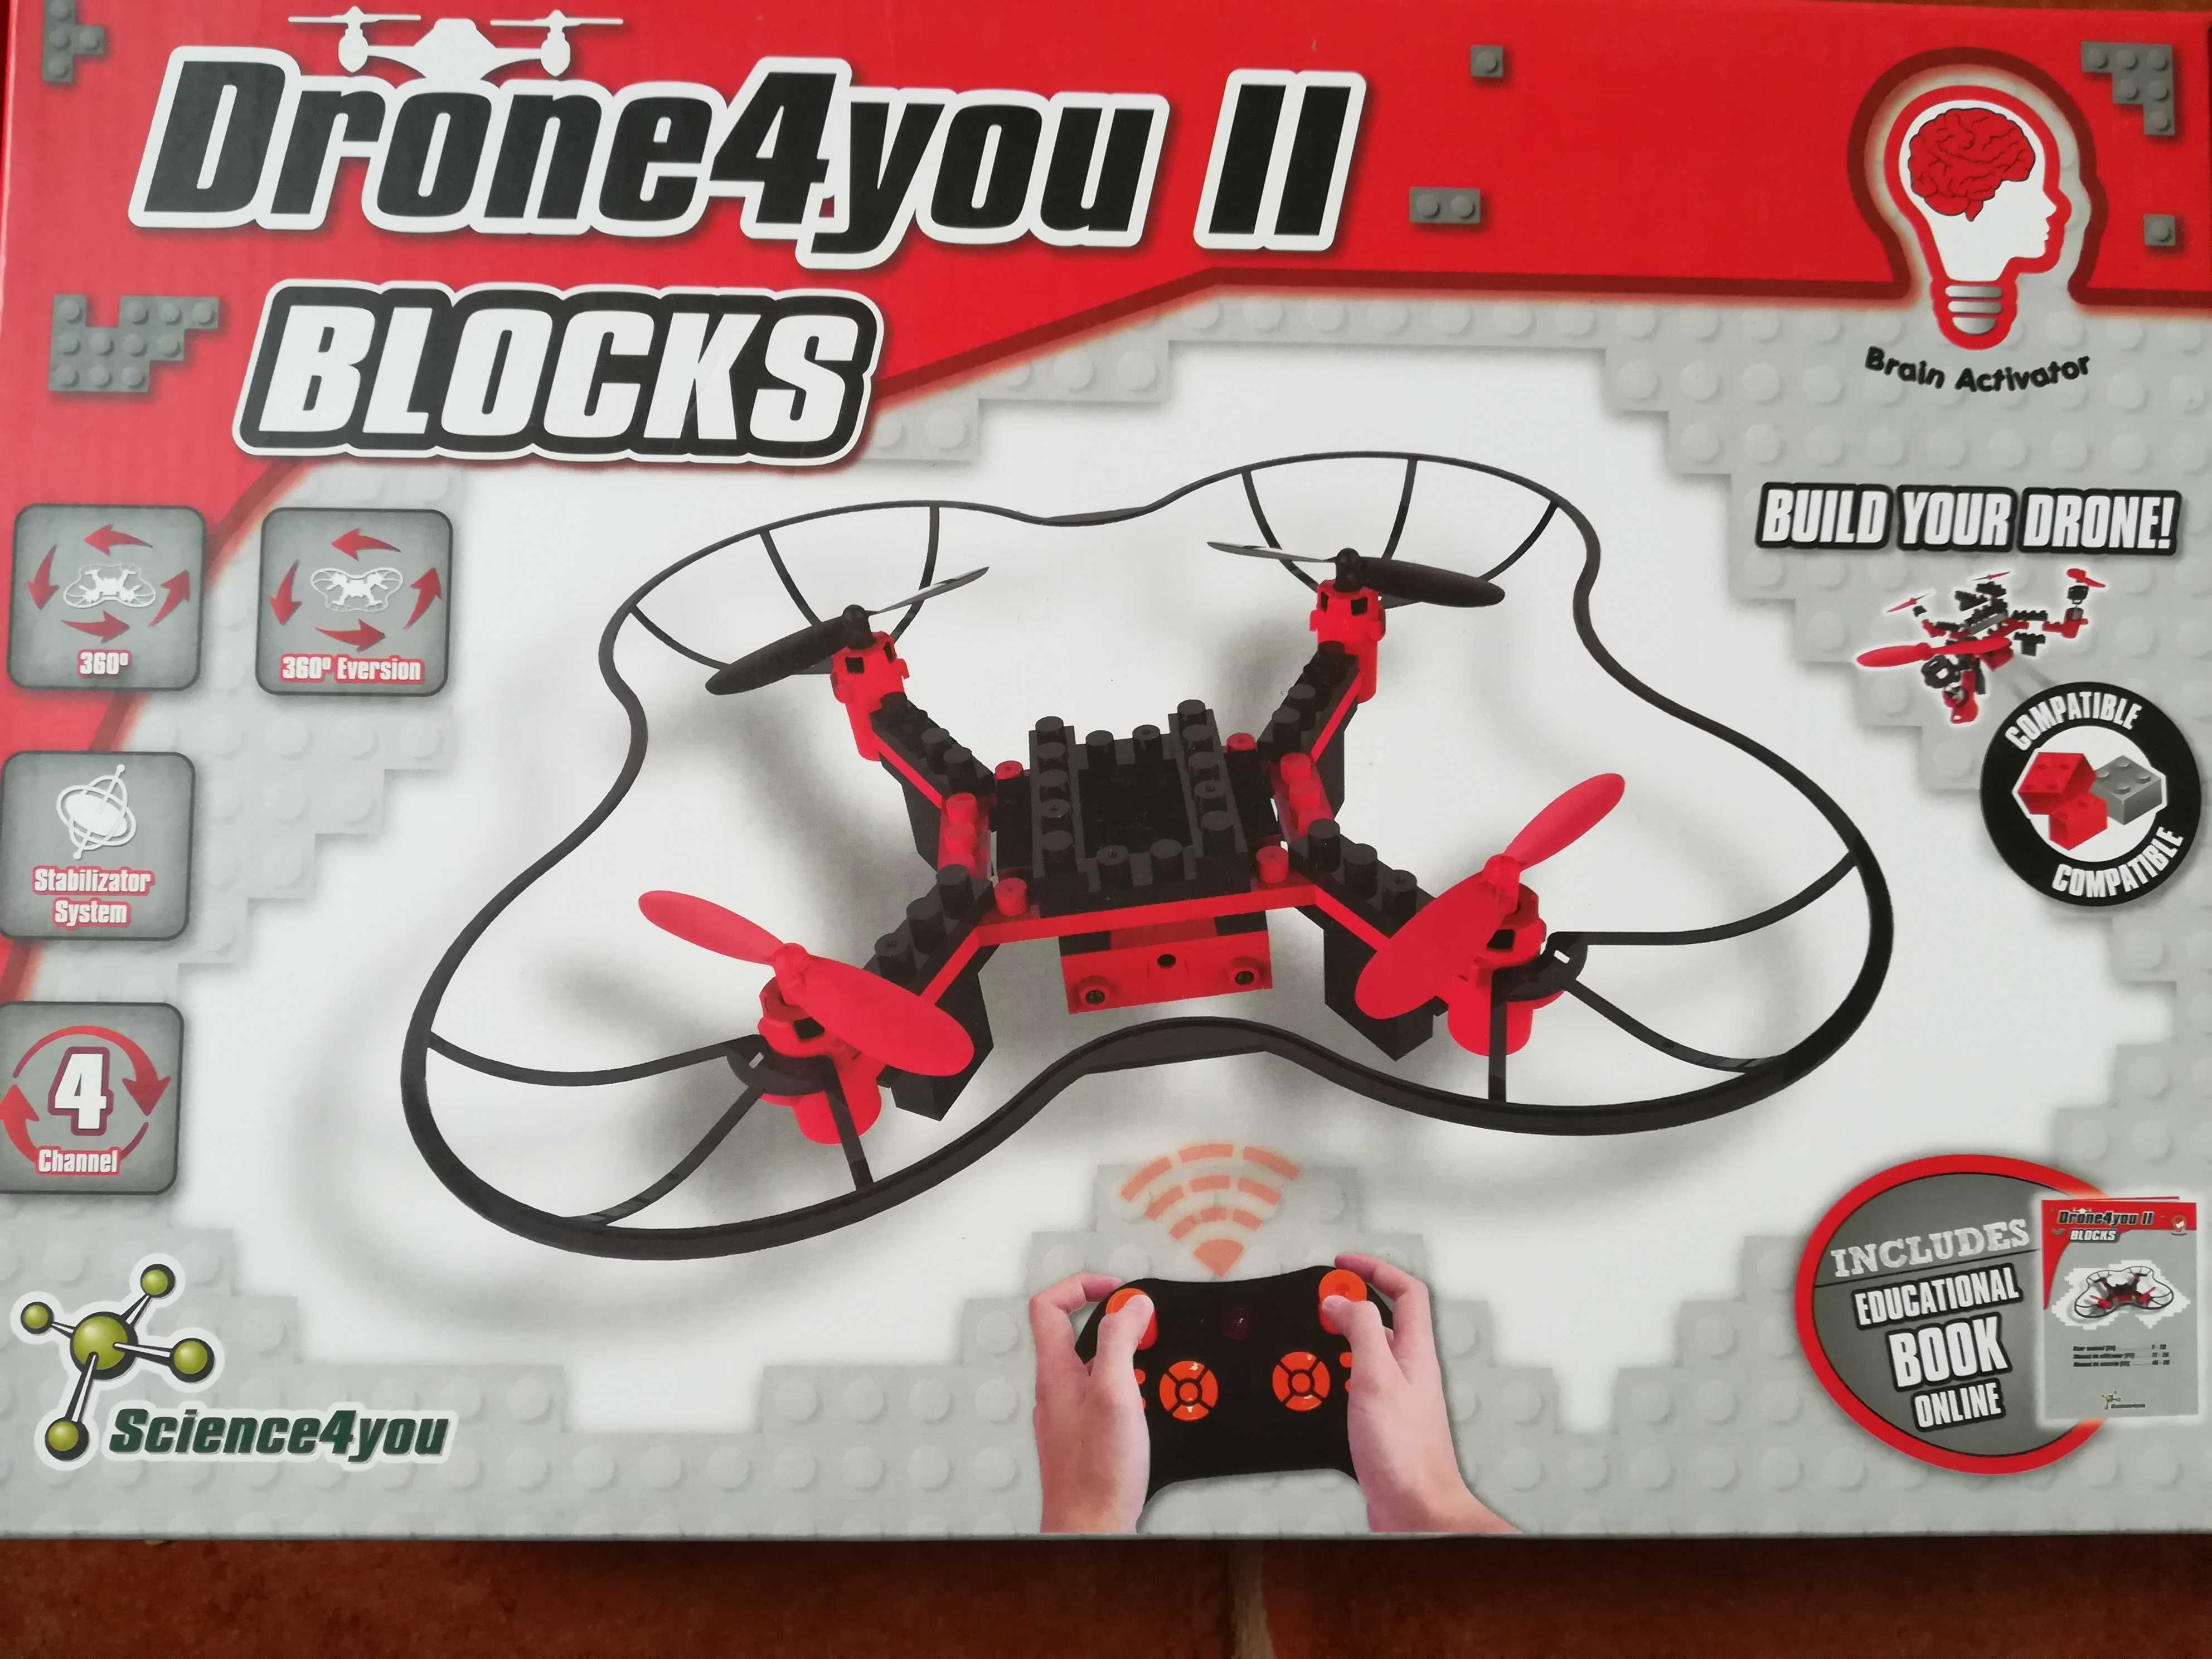 Drone 4 you II Blocks